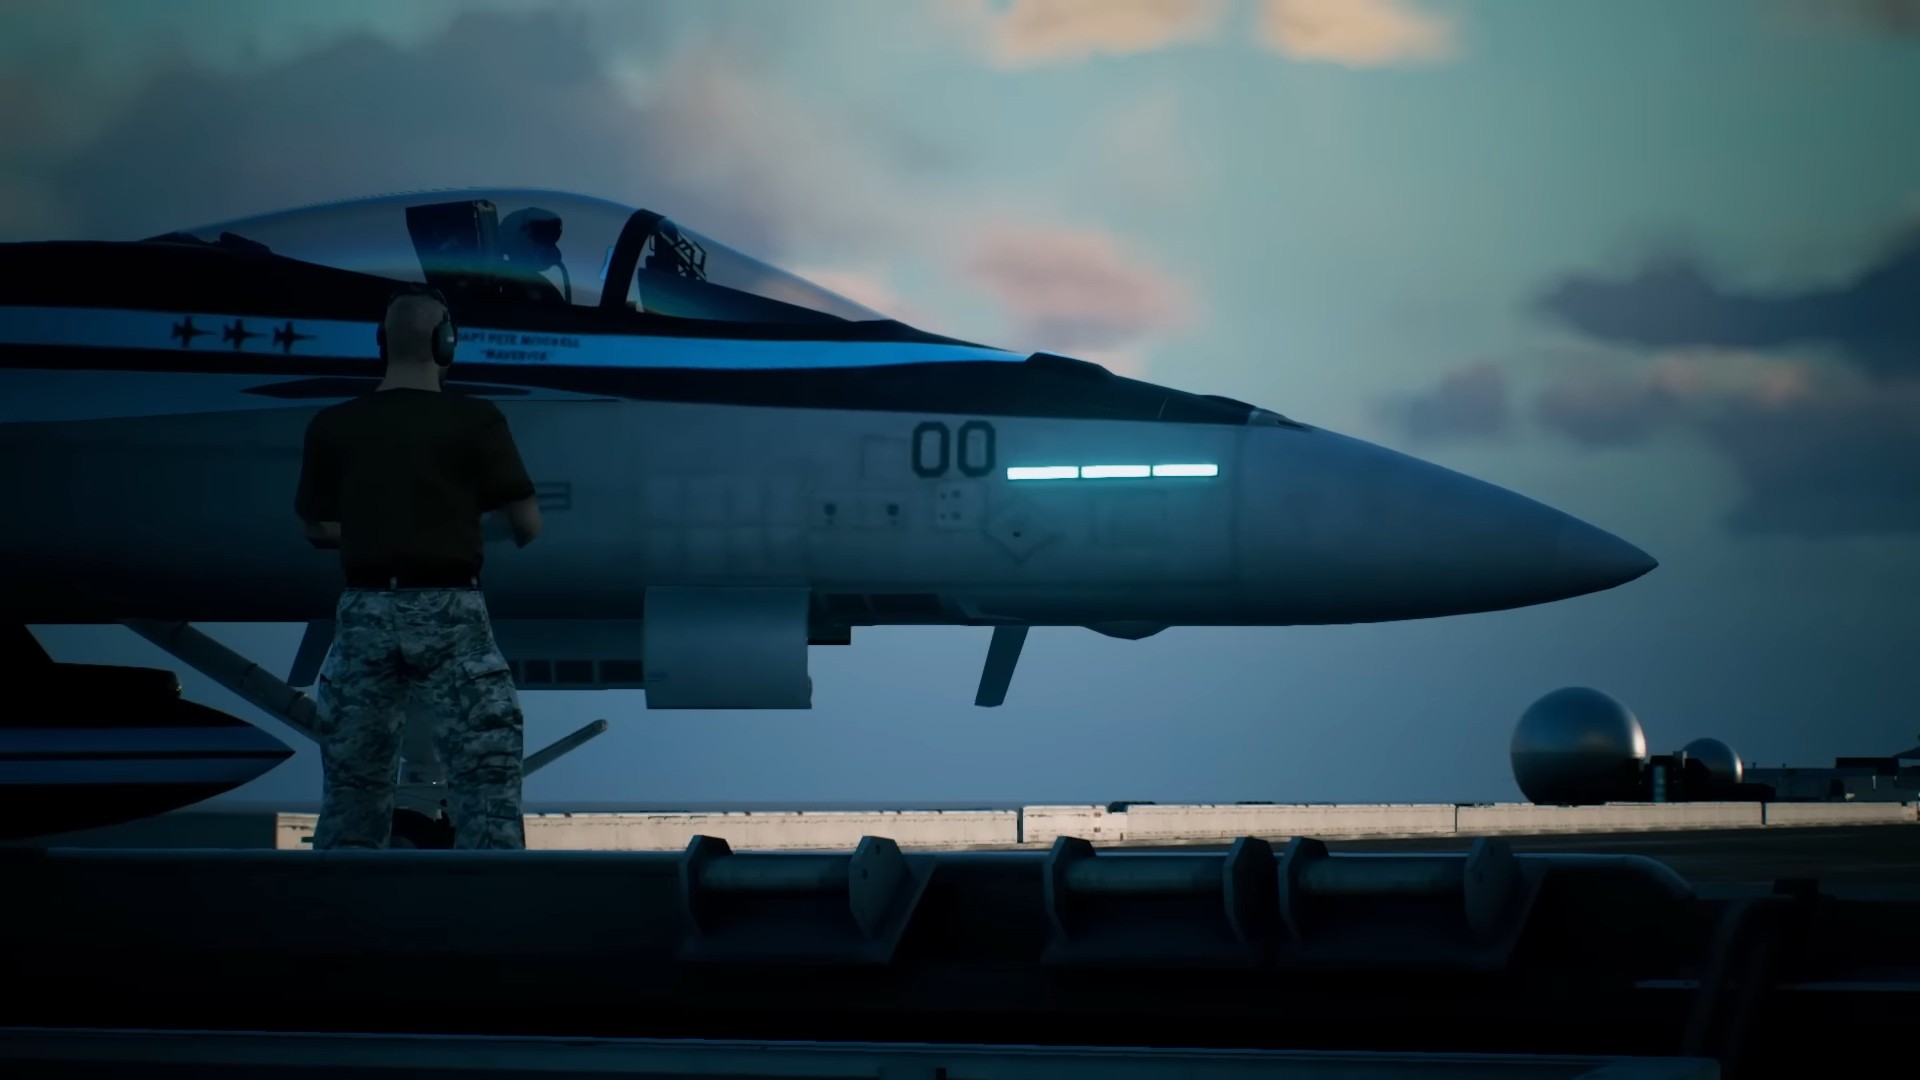 Ace Combat 7: Skies Unknown - TOP GUN: Maverick Aircraft DLC Teaser Trailer  